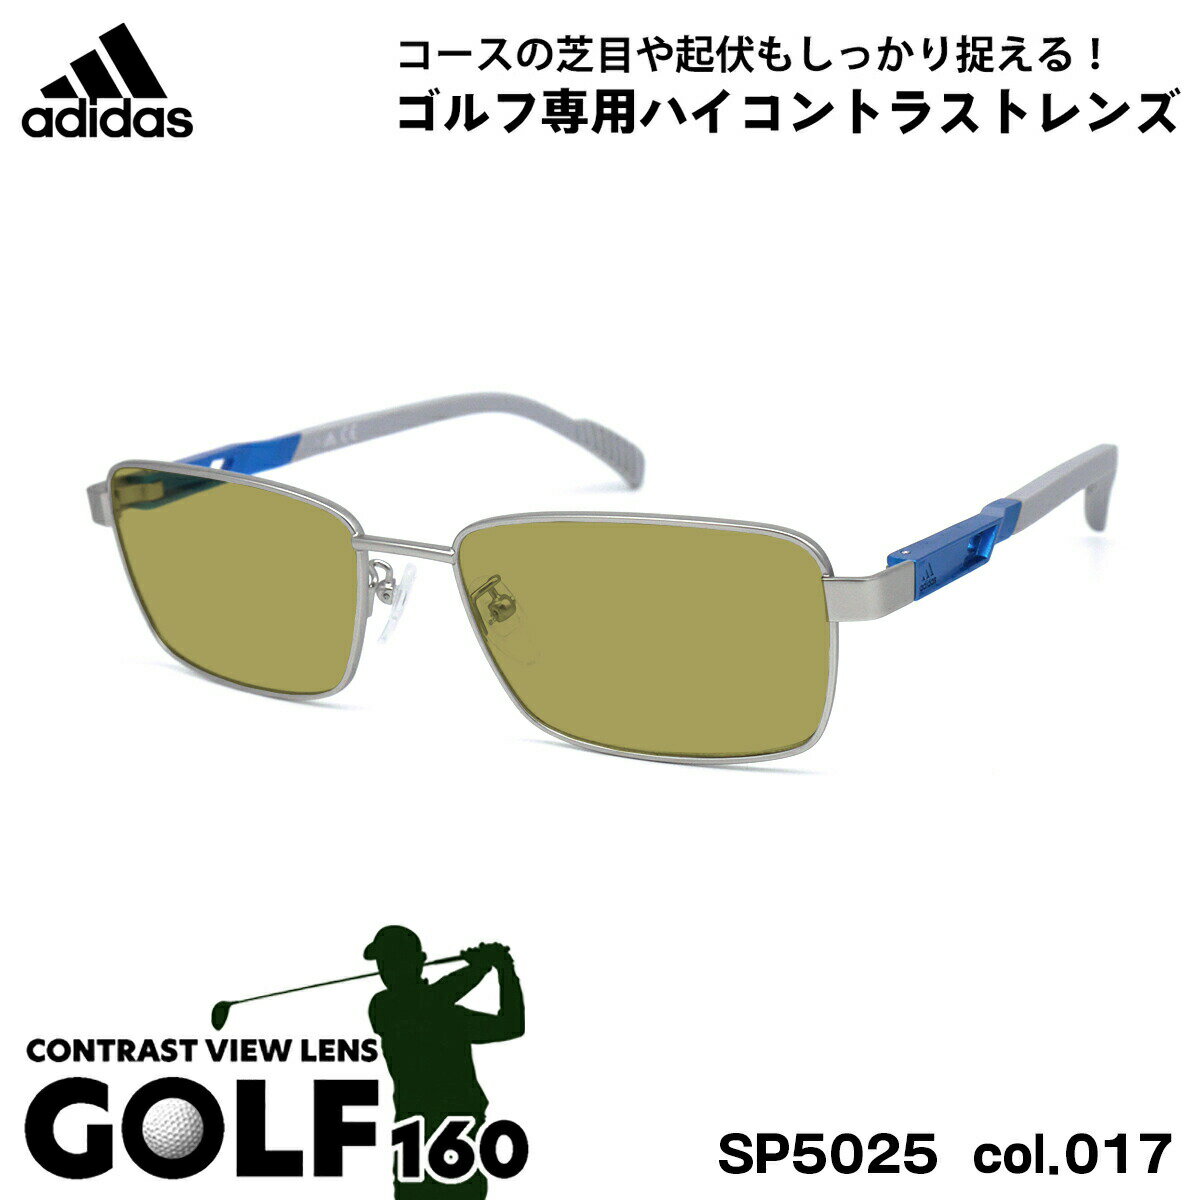 アディダス アディダス サングラス ゴルフ SP5025 (SP5025/V) col.017 55mm adidas 国内正規品 UVカット メンズ レディース GOLF160